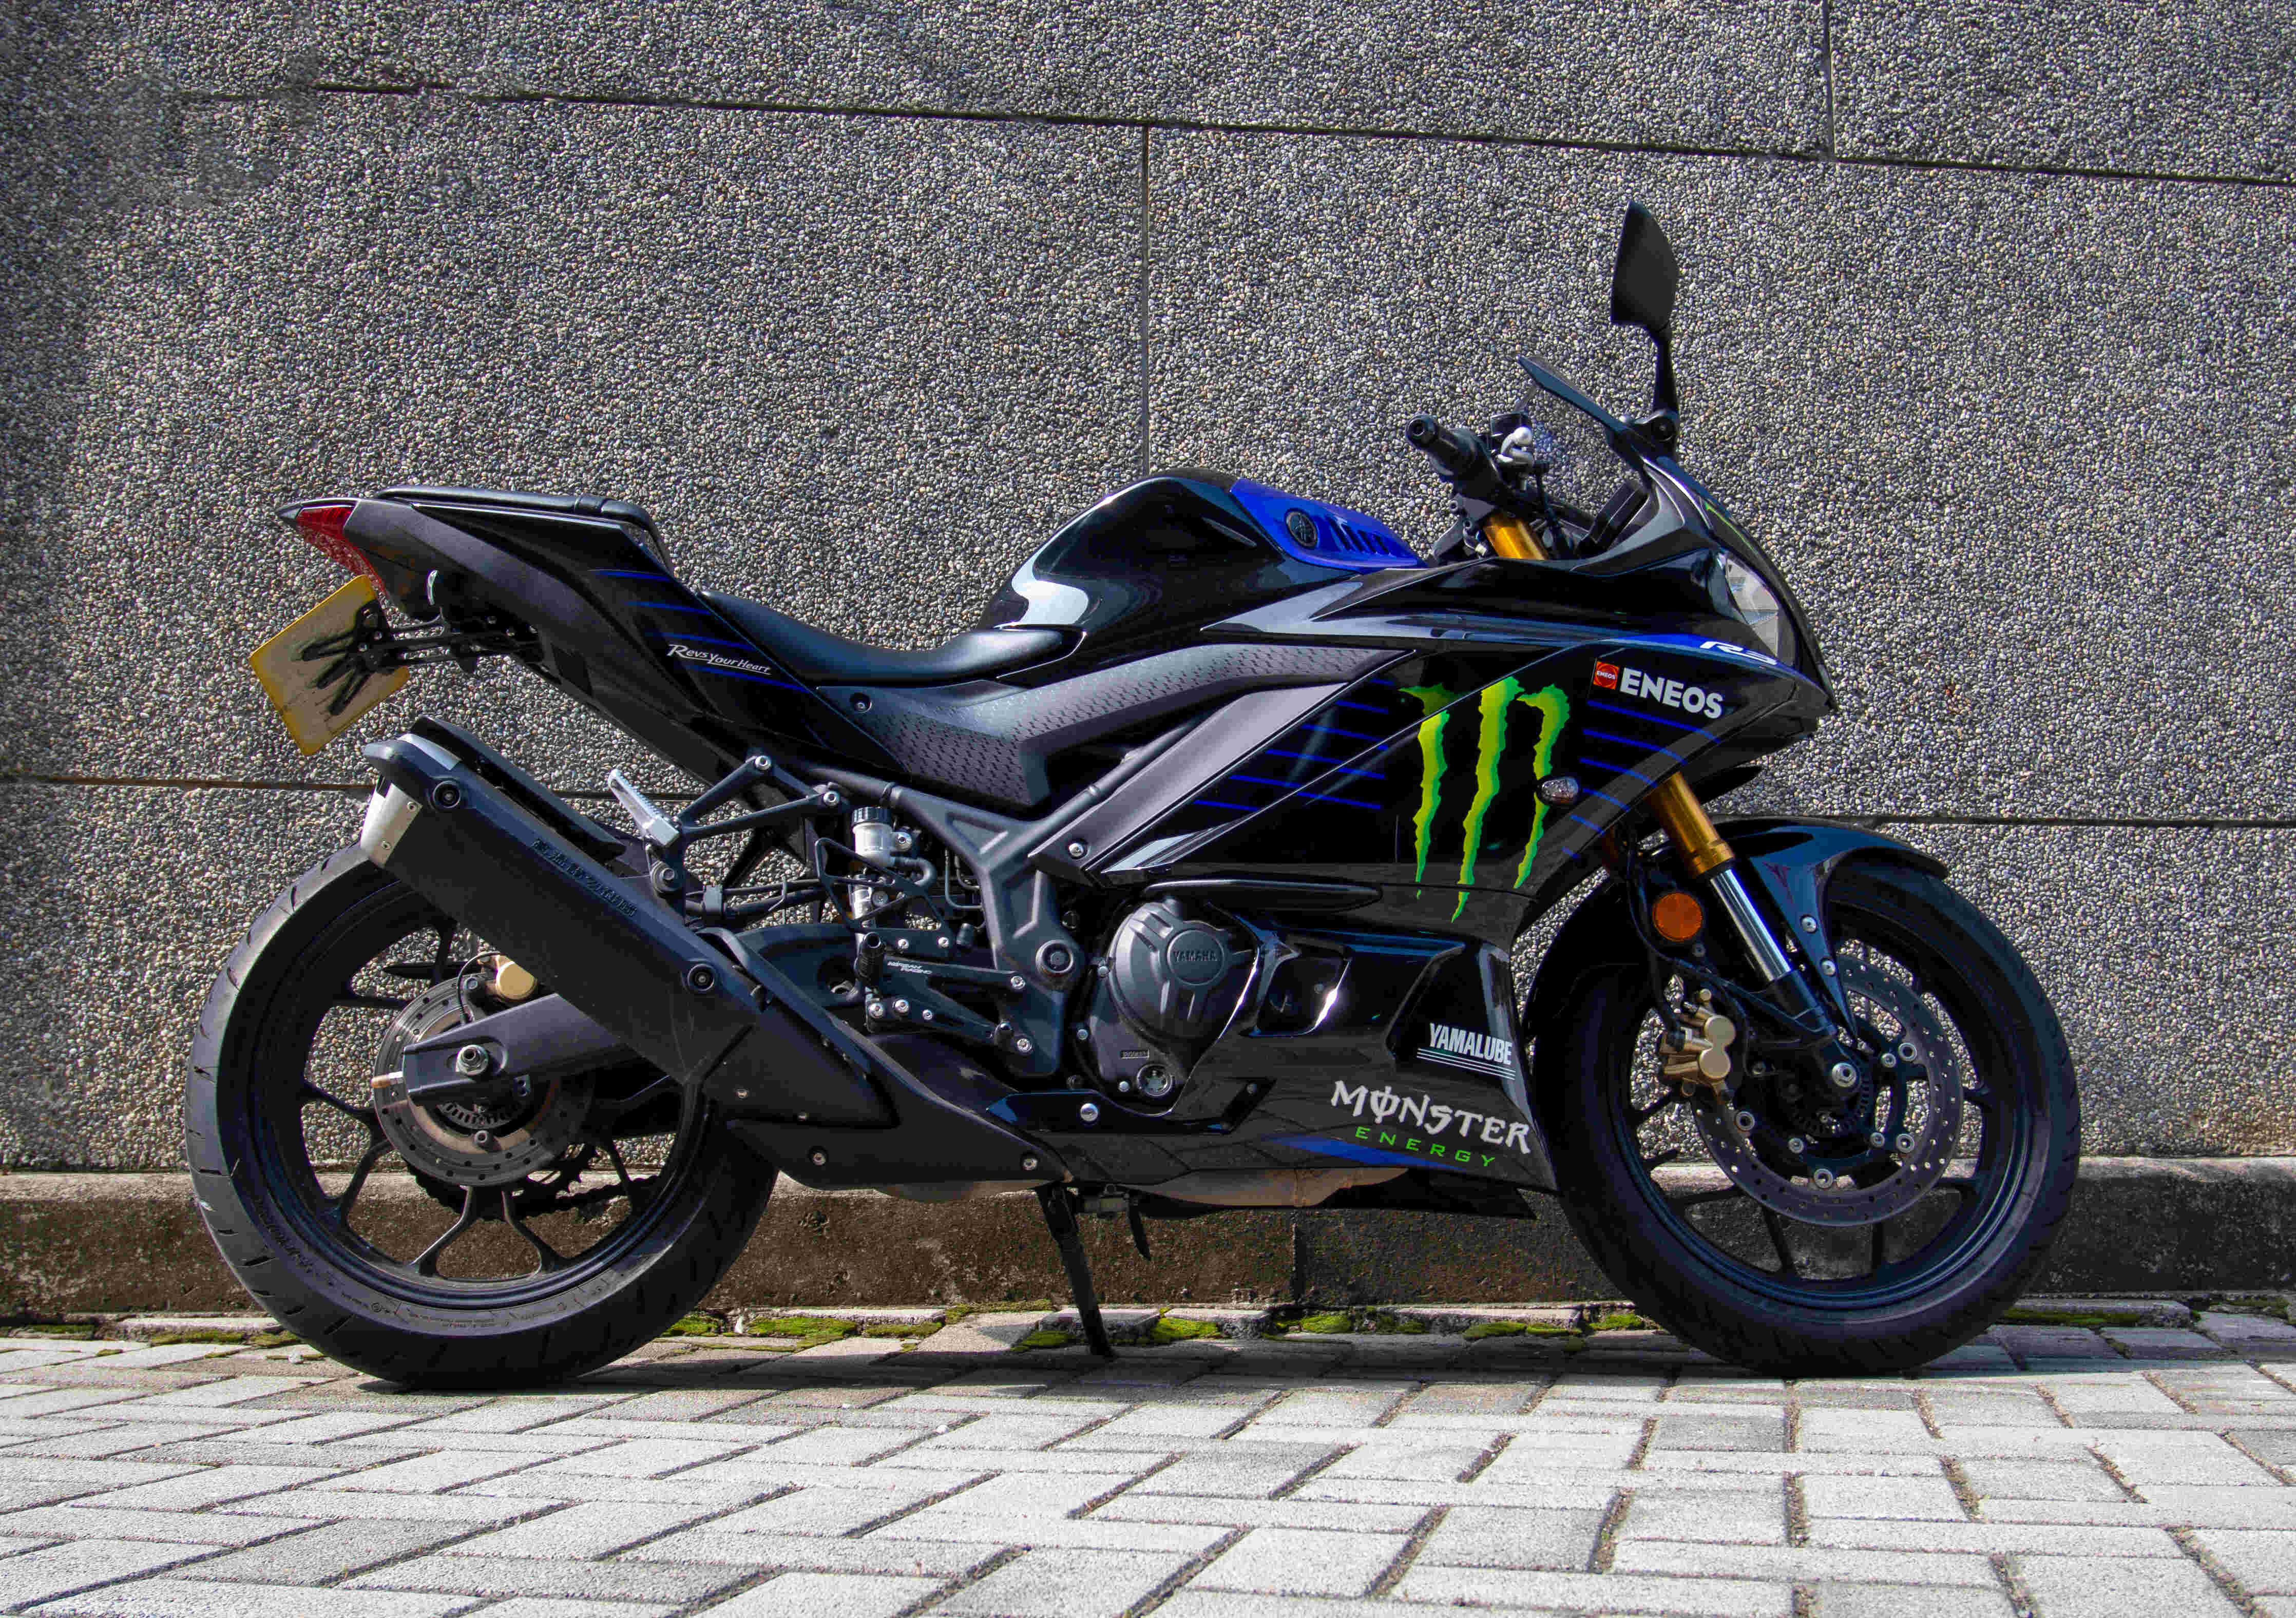 YAMAHA YZF-R3 - 中古/二手車出售中 2019 Yamaha R3 Monster Energy | 繪馬重型機車股份有限公司